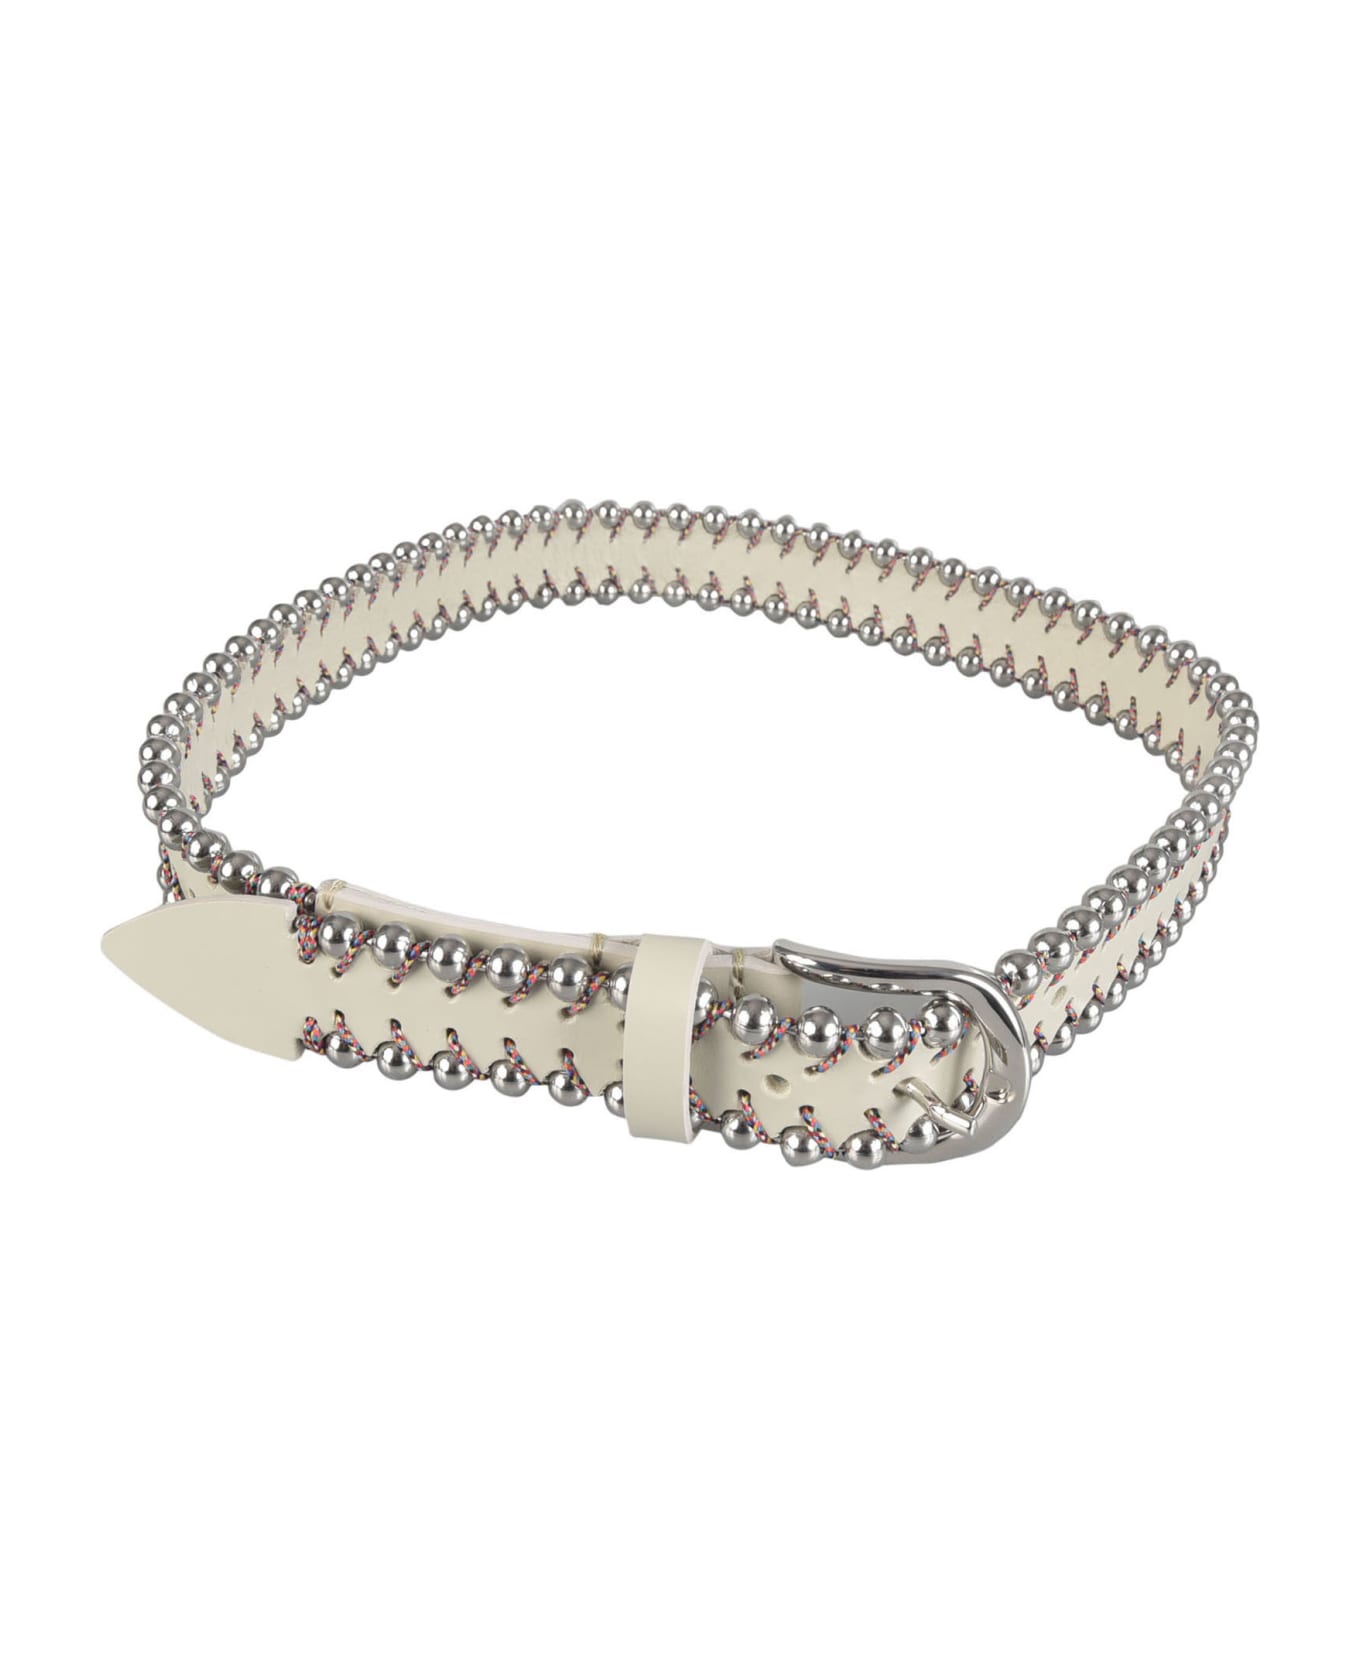 Isabel Marant Embellished Belt - Silver